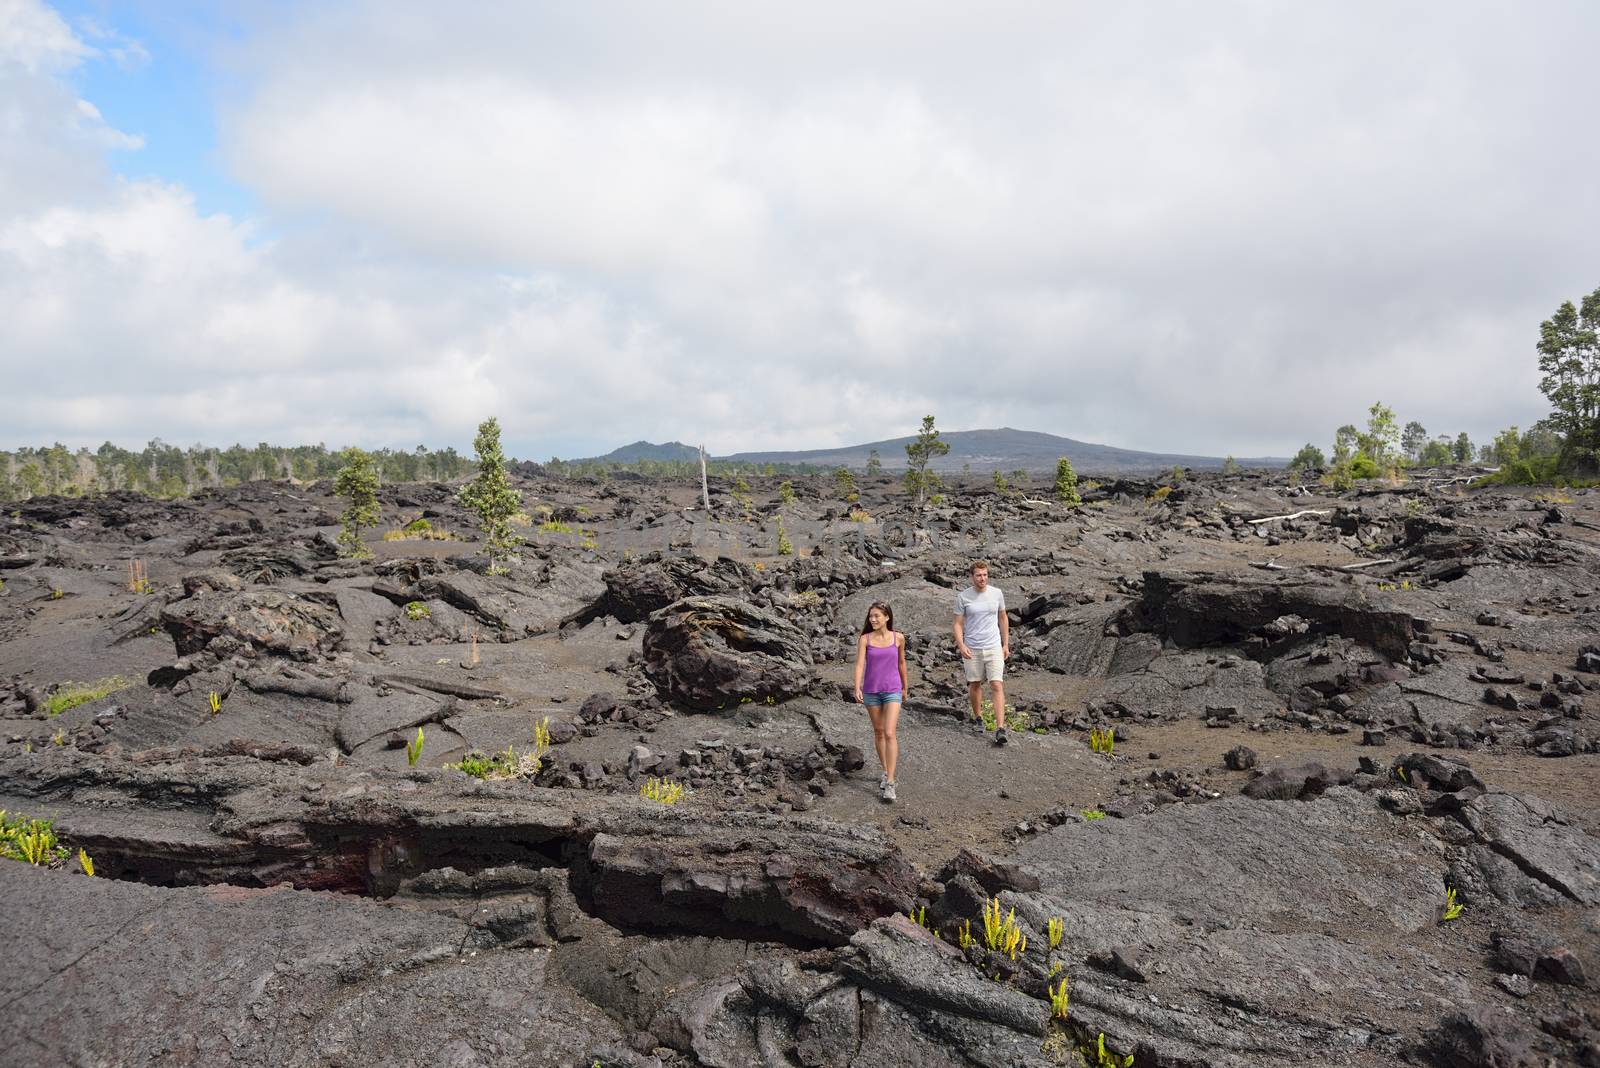 Hawaii destination travelers couple hiking in volcanic rocks on Kilauea volcano in Big island of Hawaii by Maridav